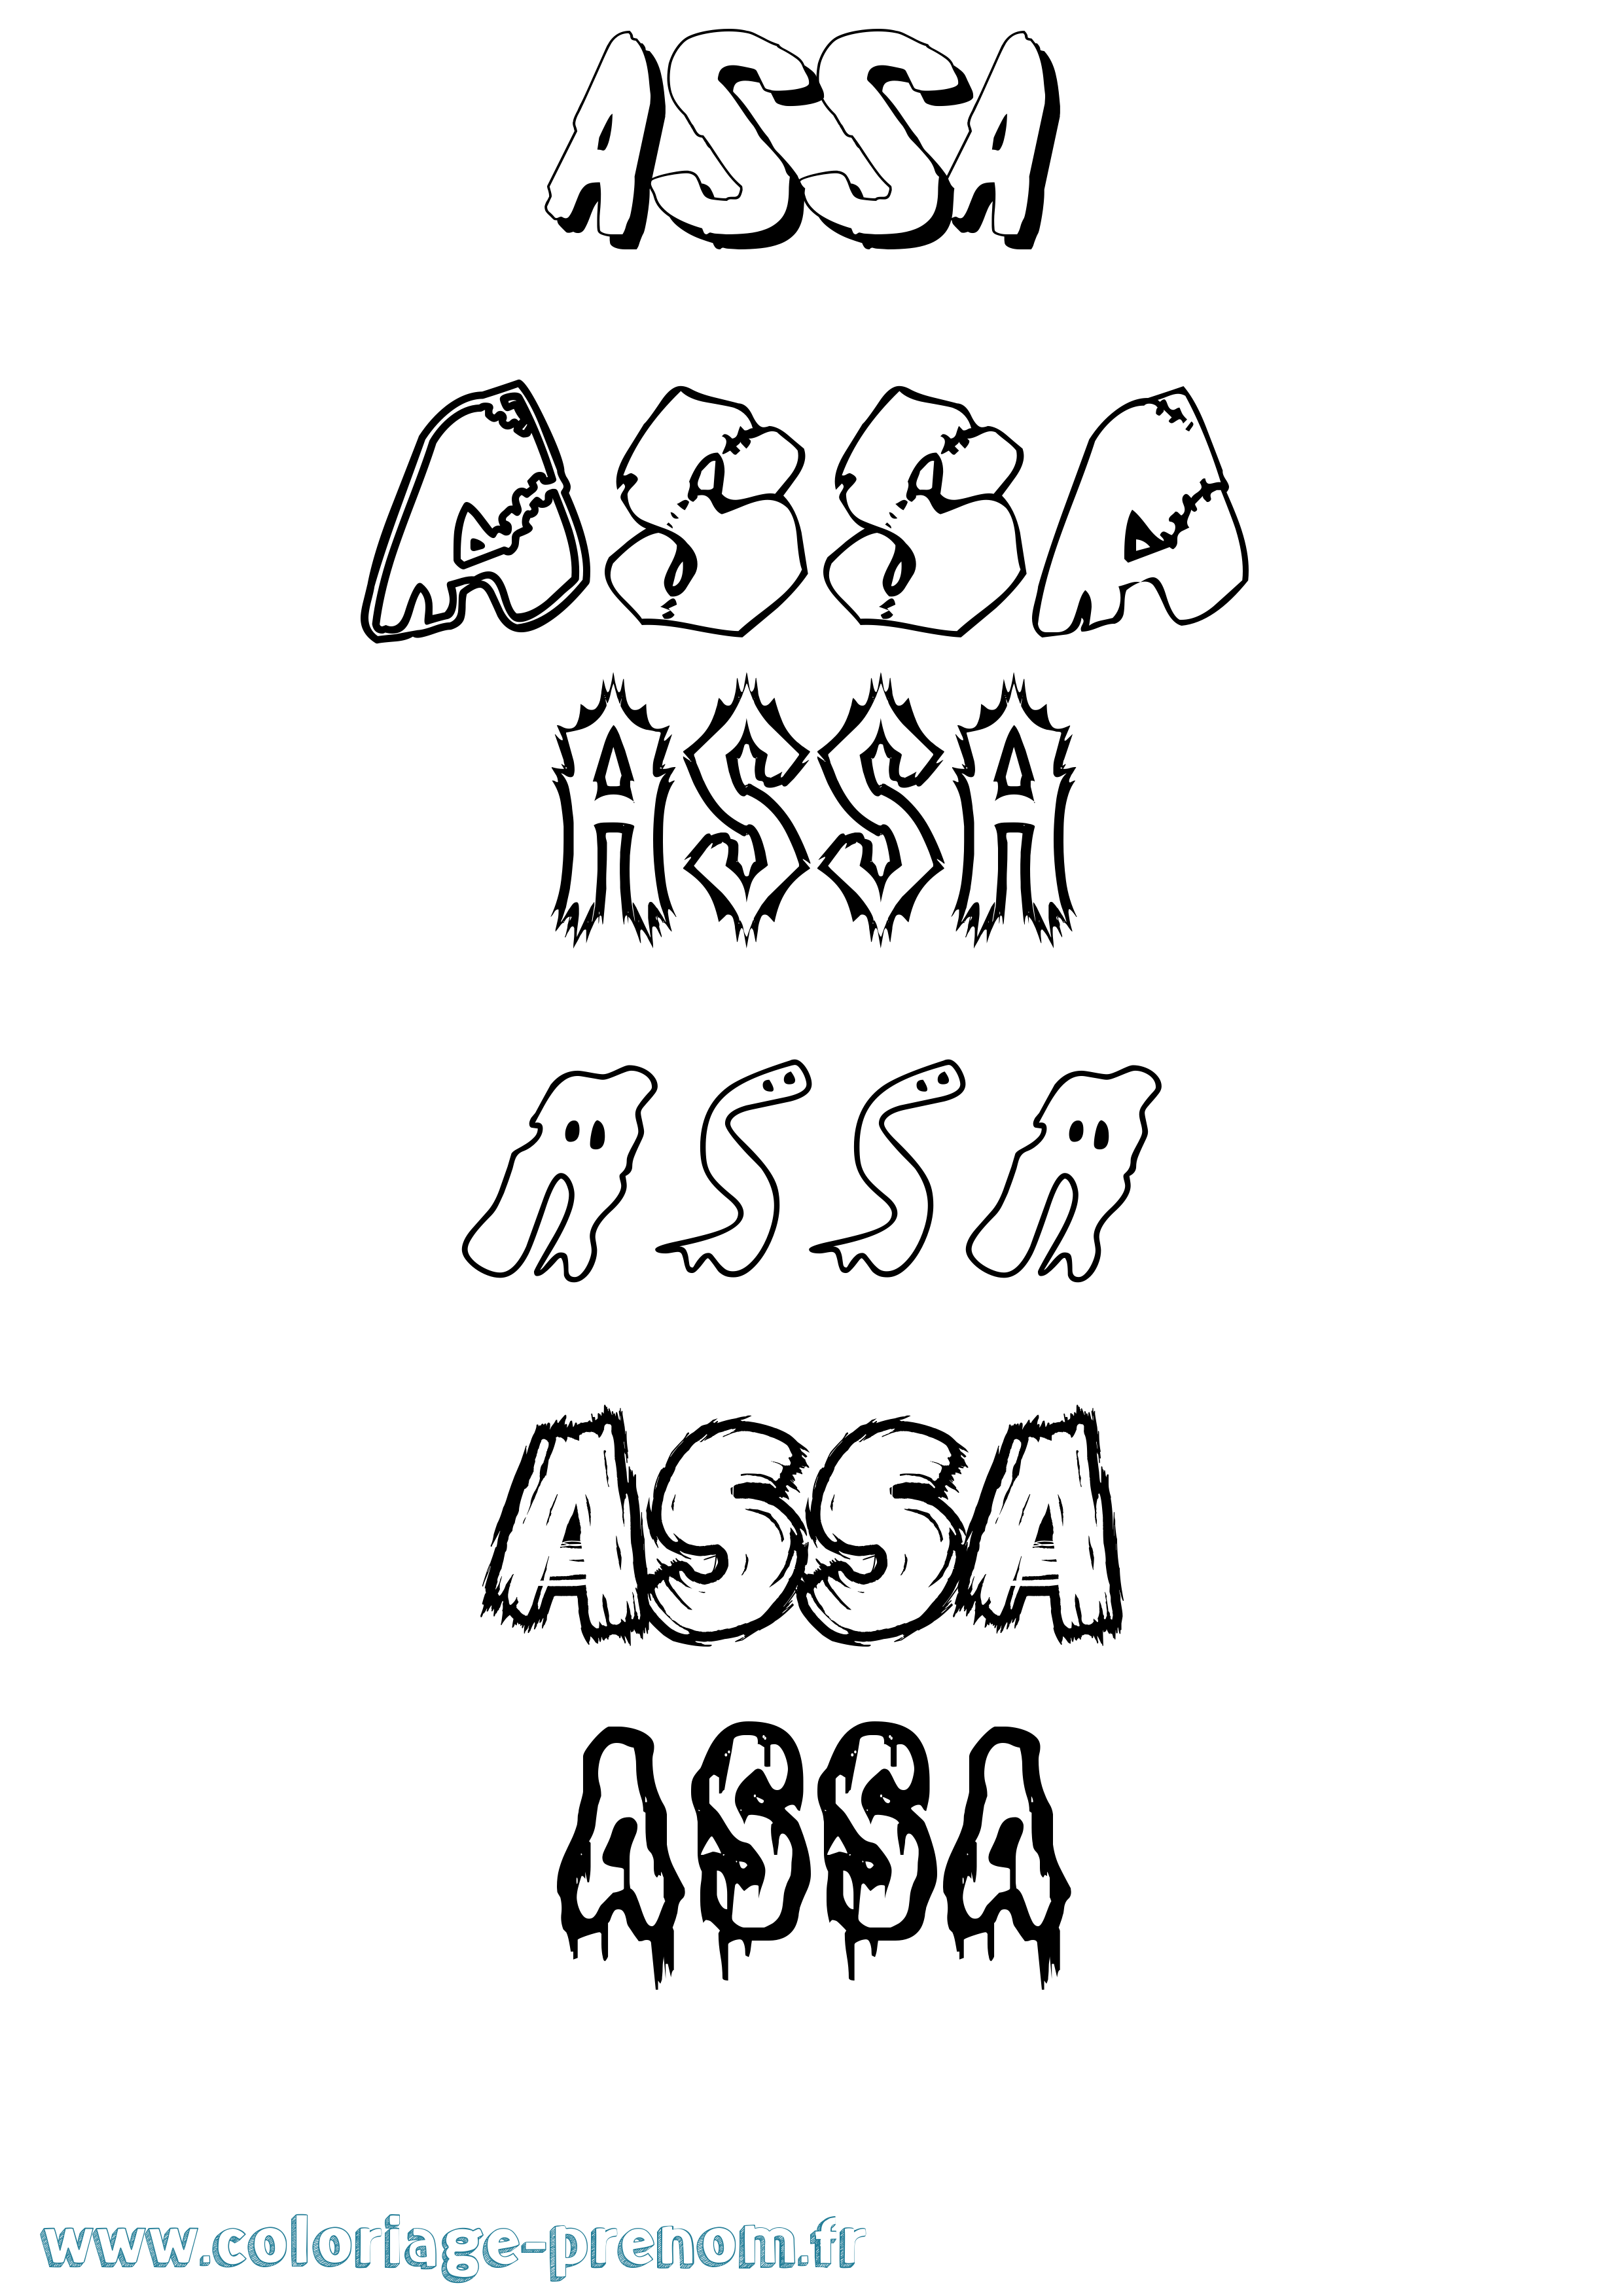 Coloriage prénom Assa Frisson